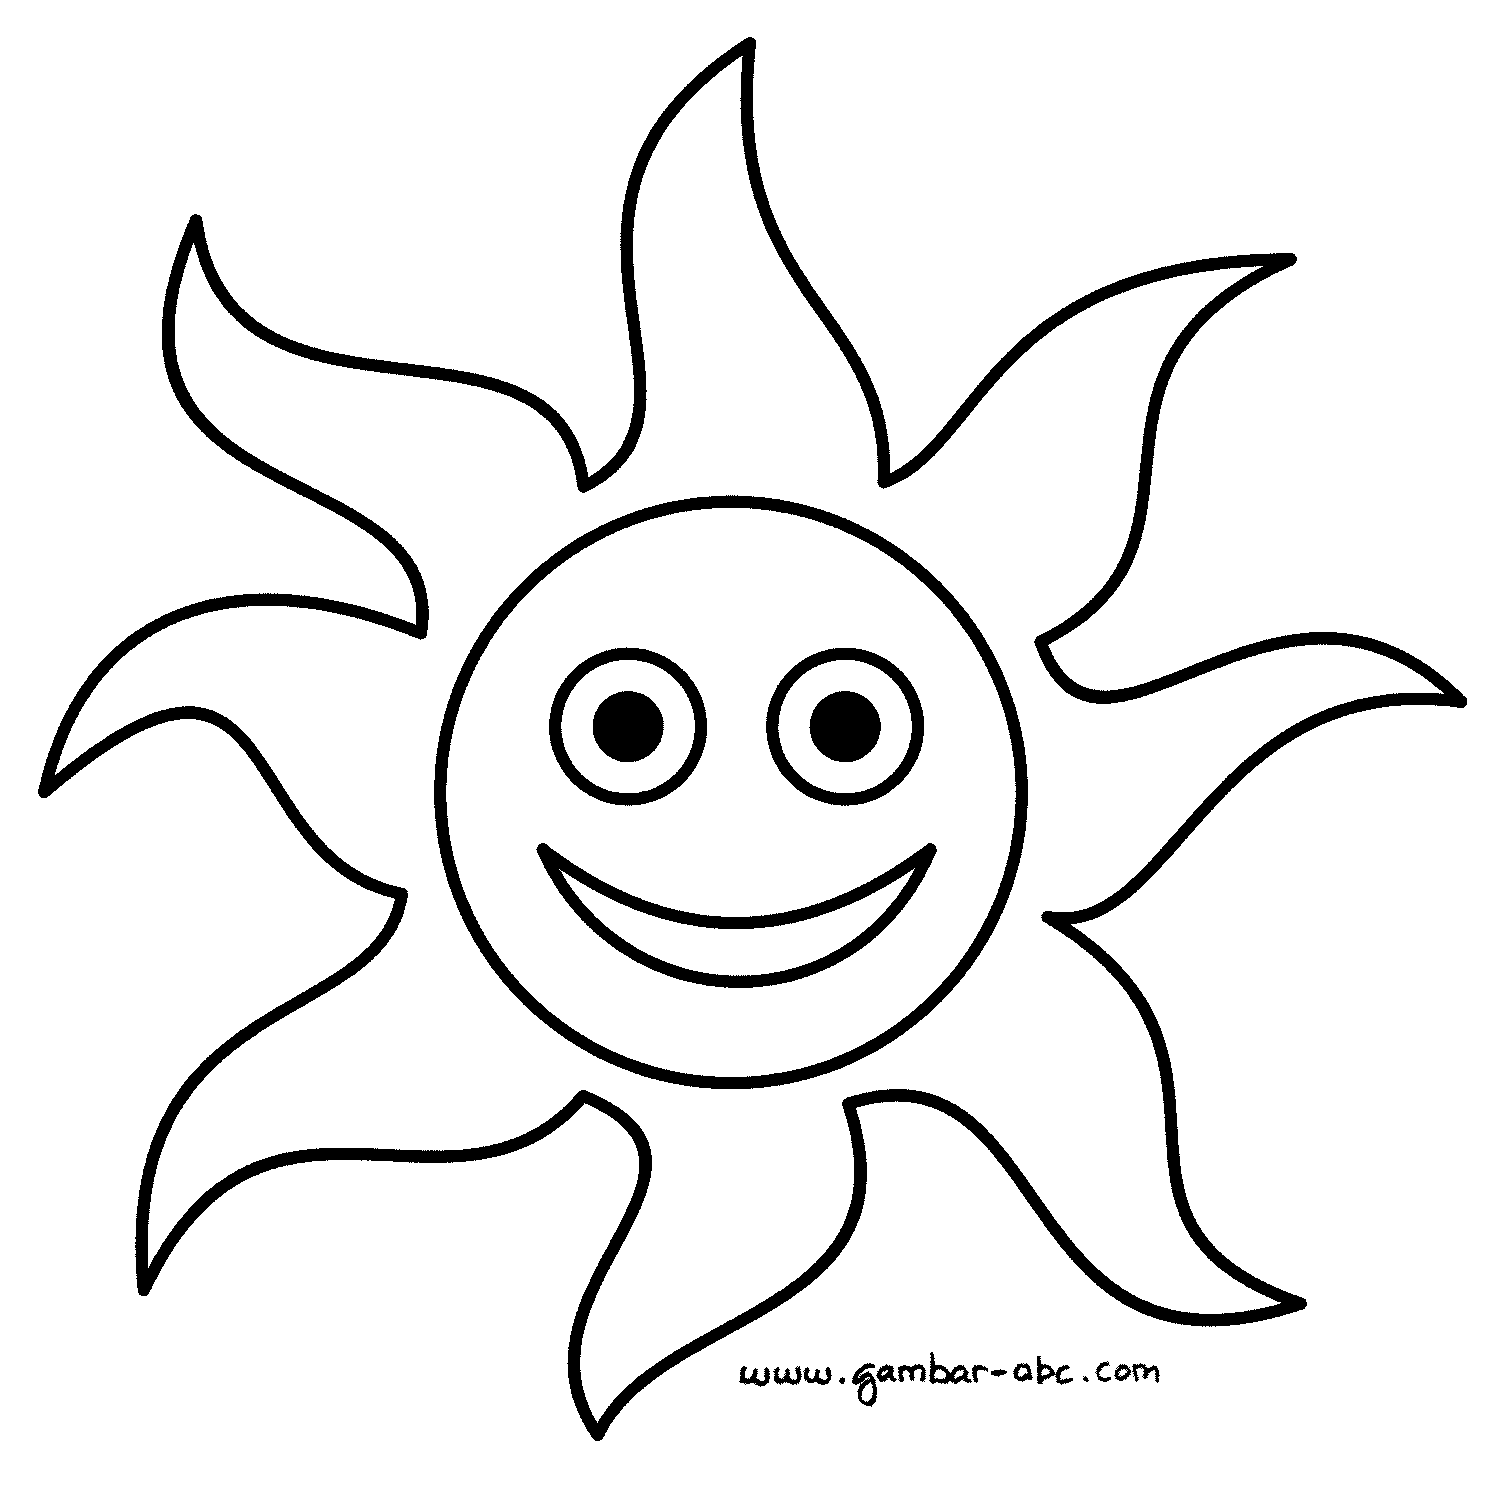 Download 560 Gambar Animasi Matahari Hitam Putih Paling Baru